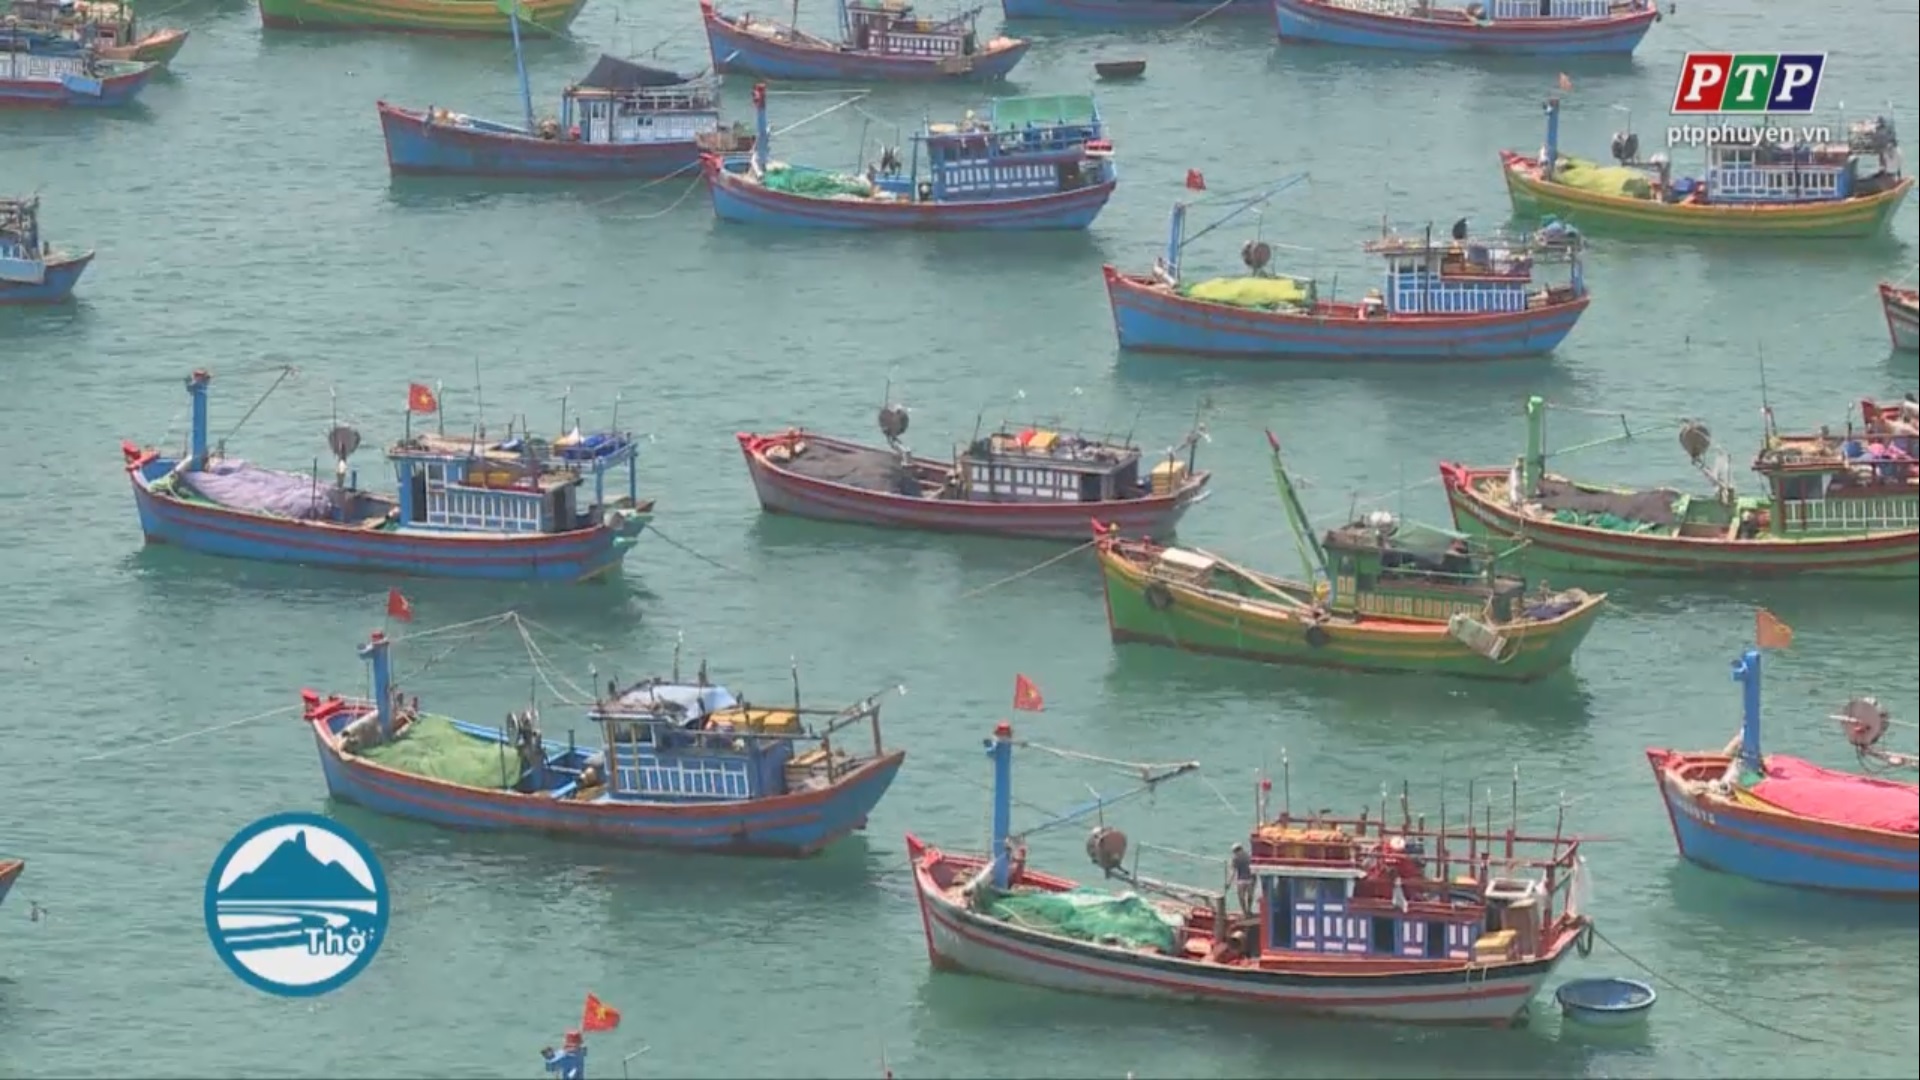 UBND tỉnh cho chủ trương lập quy hoạch xây dựng vùng liên huyện ven biển tỉnh Phú Yên đến năm 2030